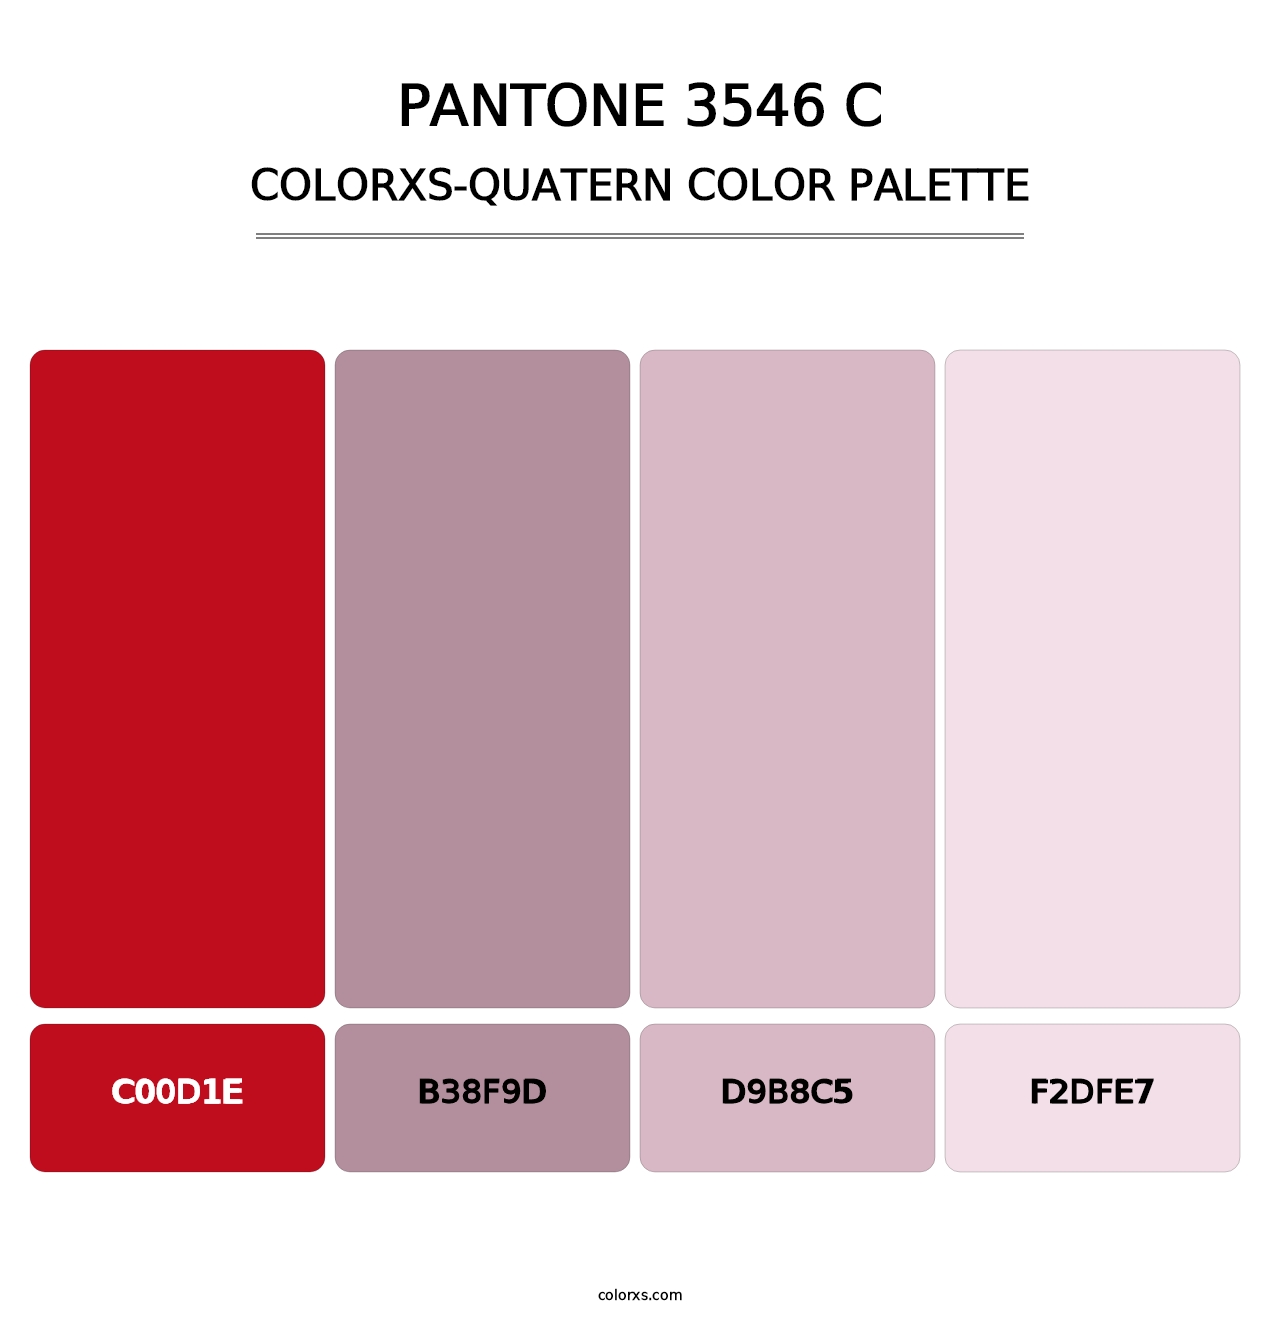 PANTONE 3546 C - Colorxs Quatern Palette